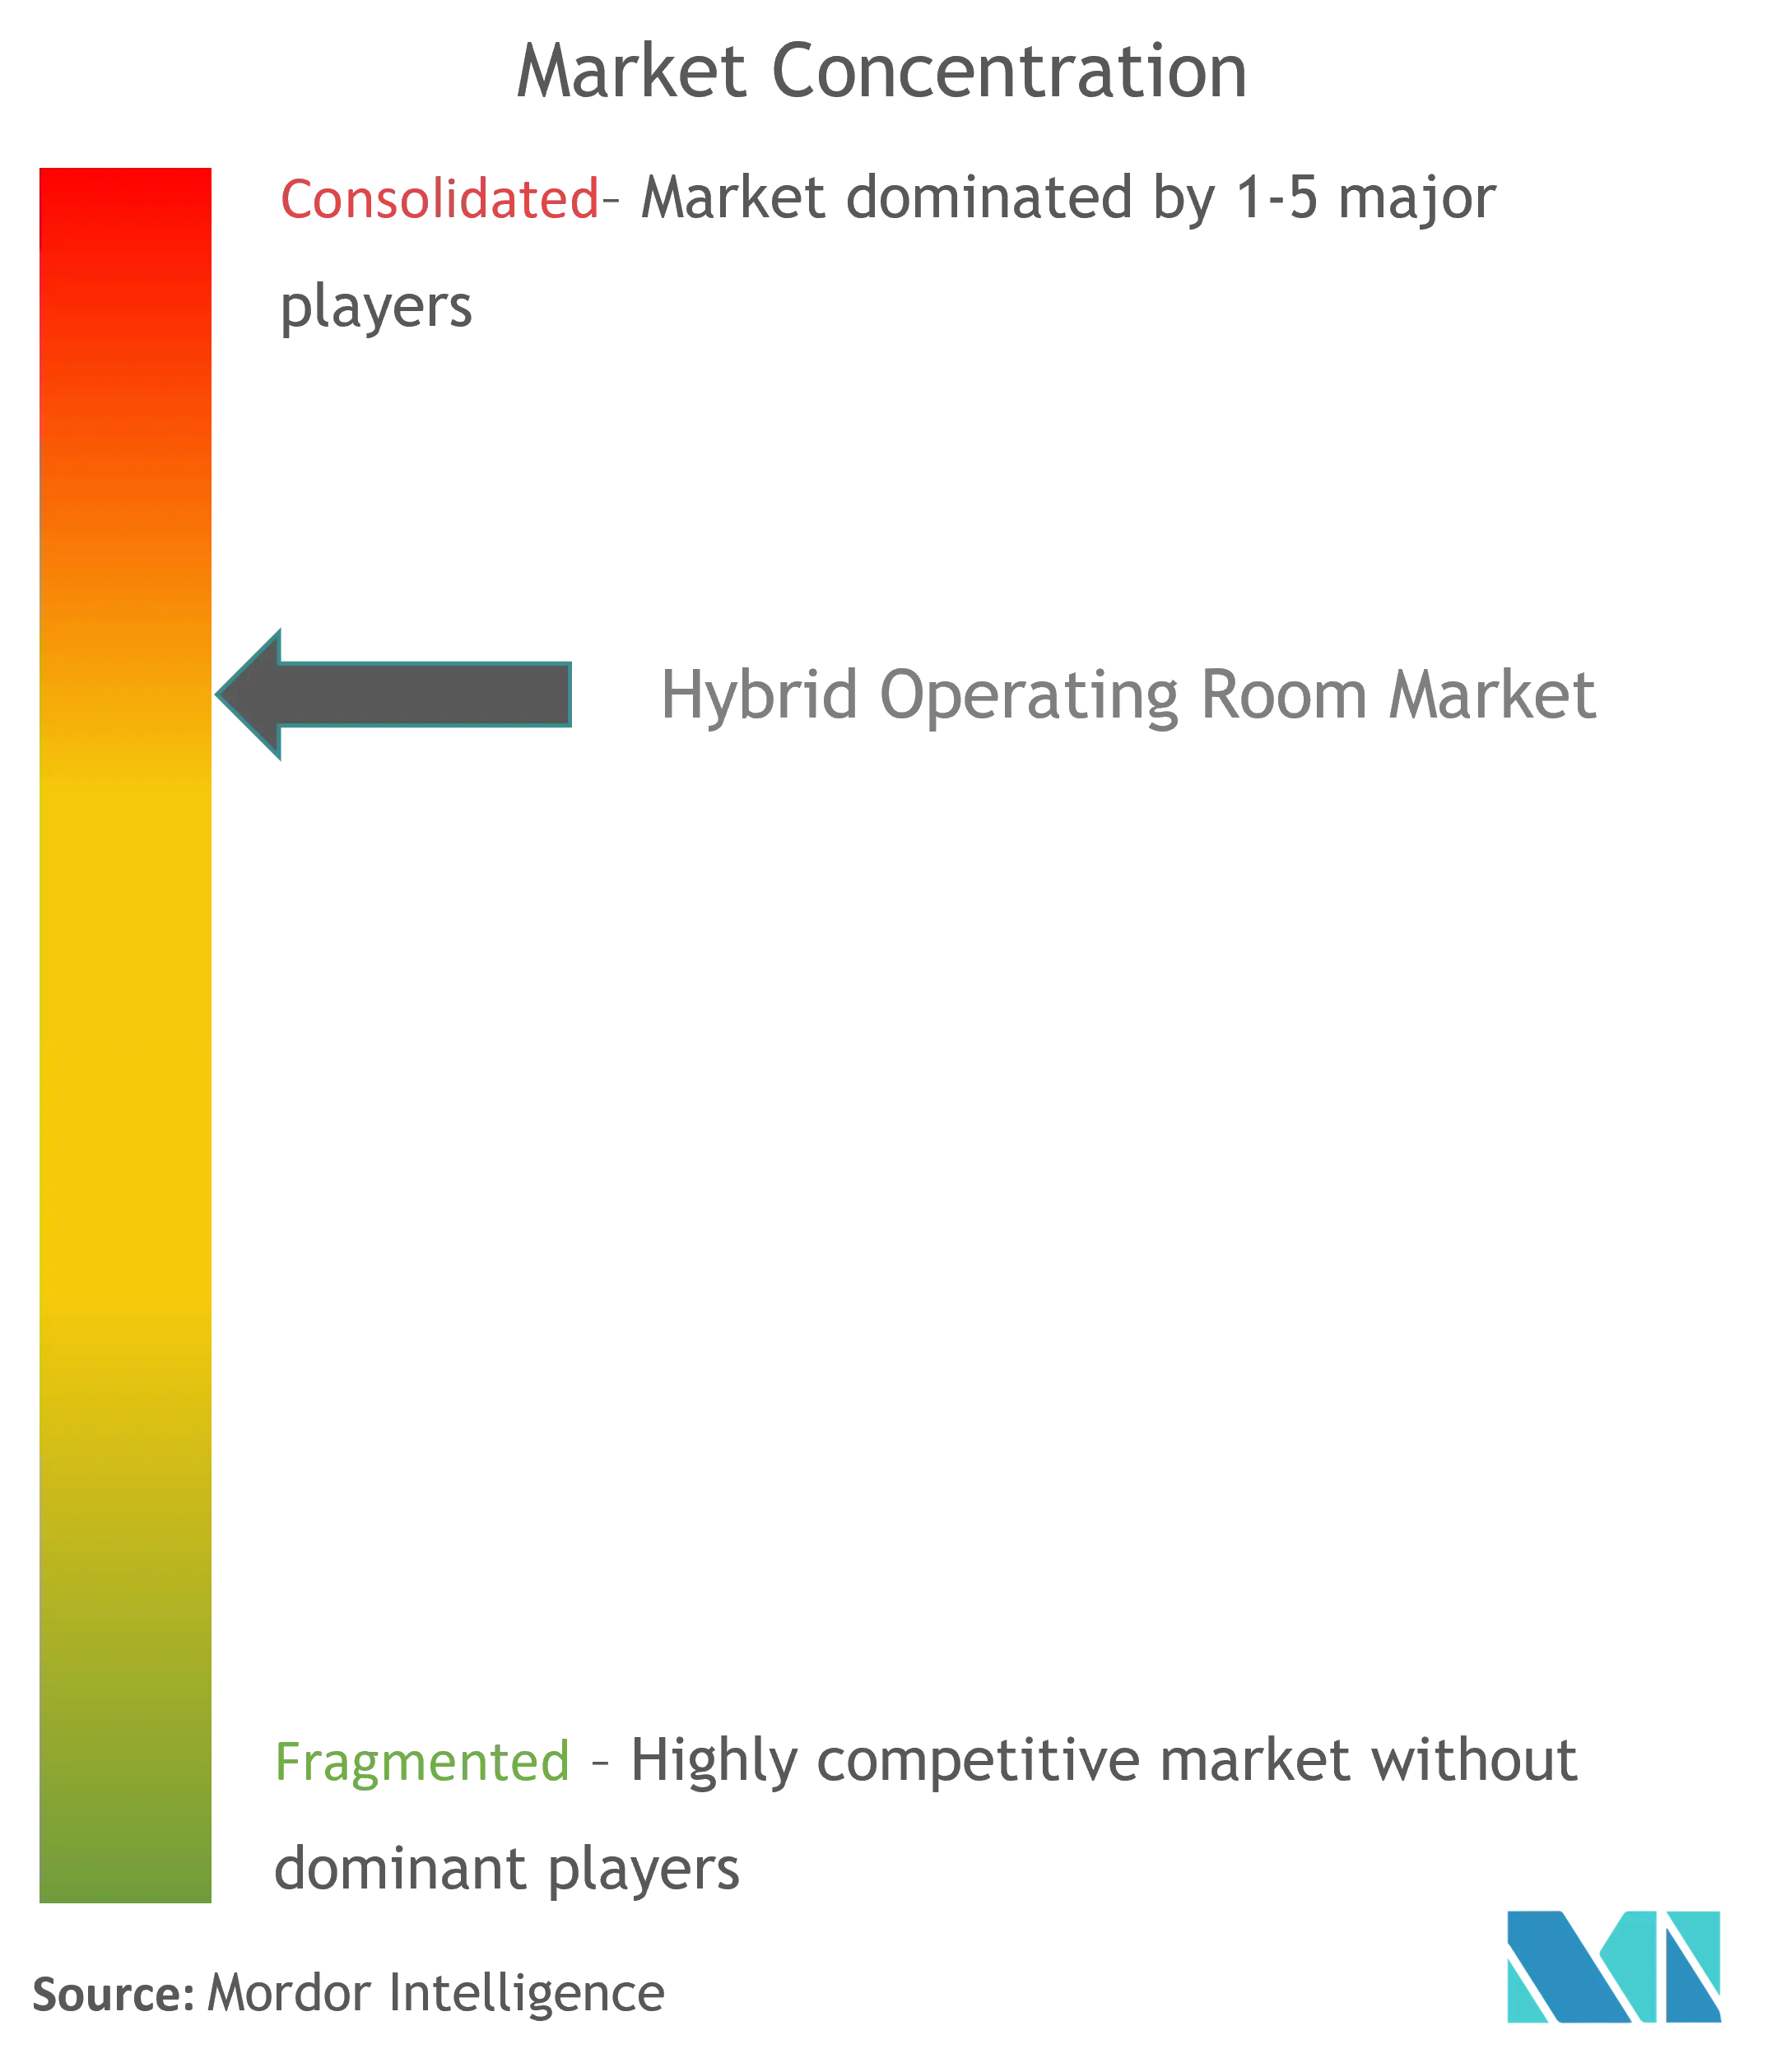 Concentration du marché des salles dopération hybrides